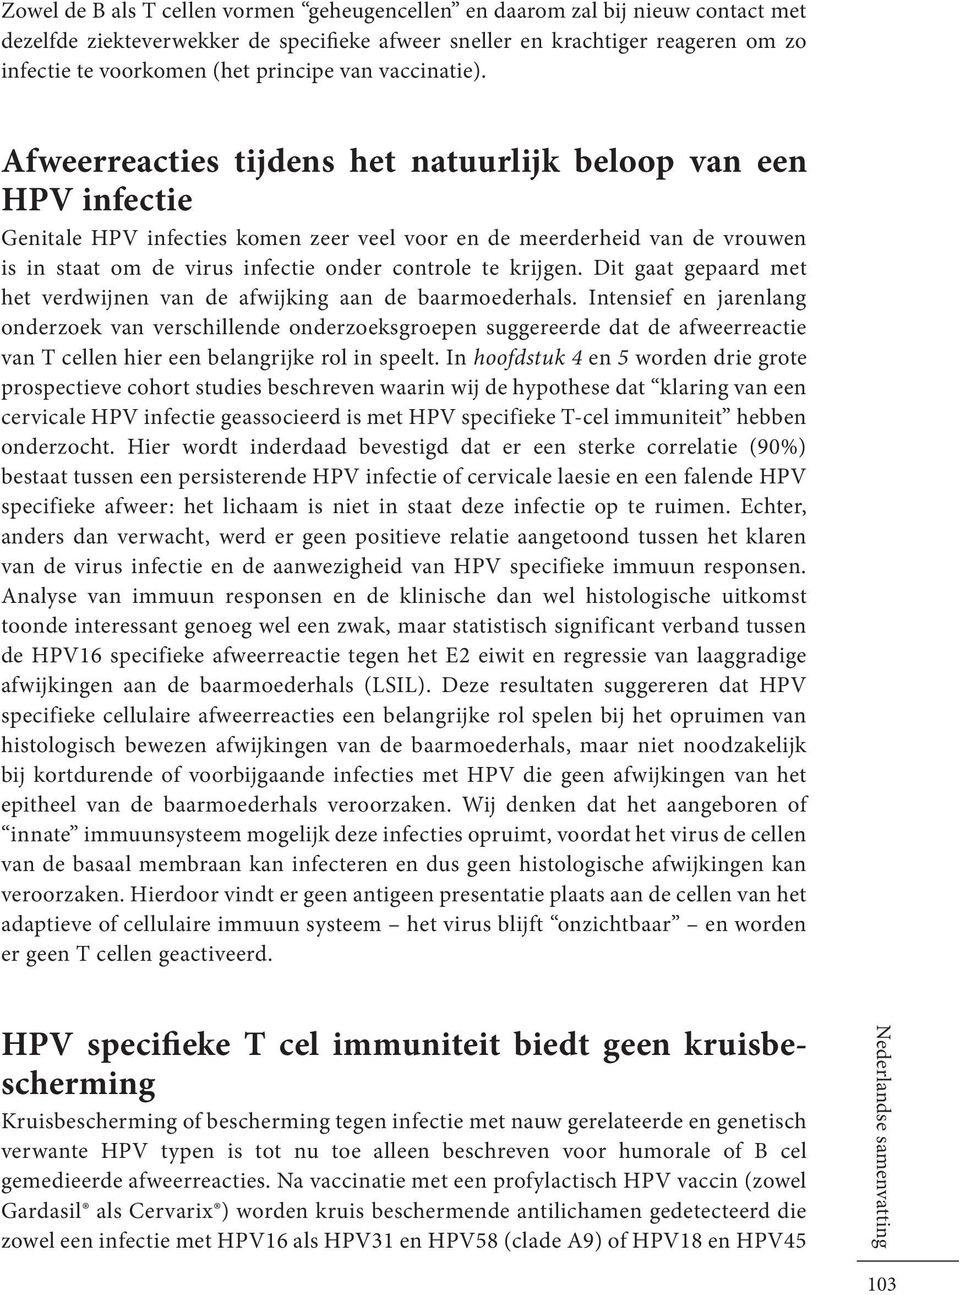 Afweerreacties tijdens het natuurlijk beloop van een HPV infectie Genitale HPV infecties komen zeer veel voor en de meerderheid van de vrouwen is in staat om de virus infectie onder controle te